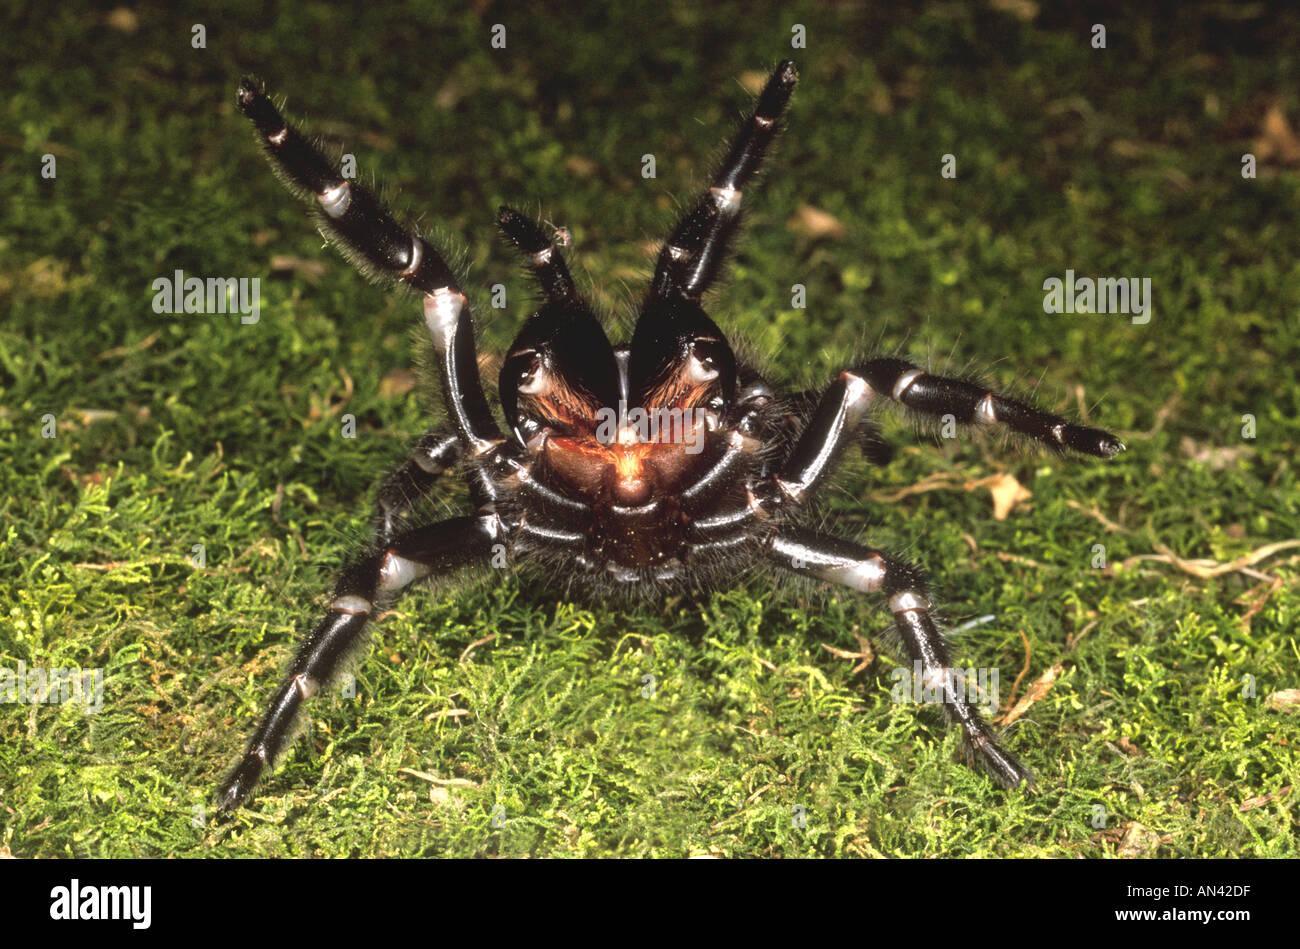 Imbuto di Sydney Web Spider, Atrax robustus, in una posizione di pericolo che mostra zanne. Questi ragni sono rinomati per la loro altamente tossici e ad azione rapida Venom. Foto Stock